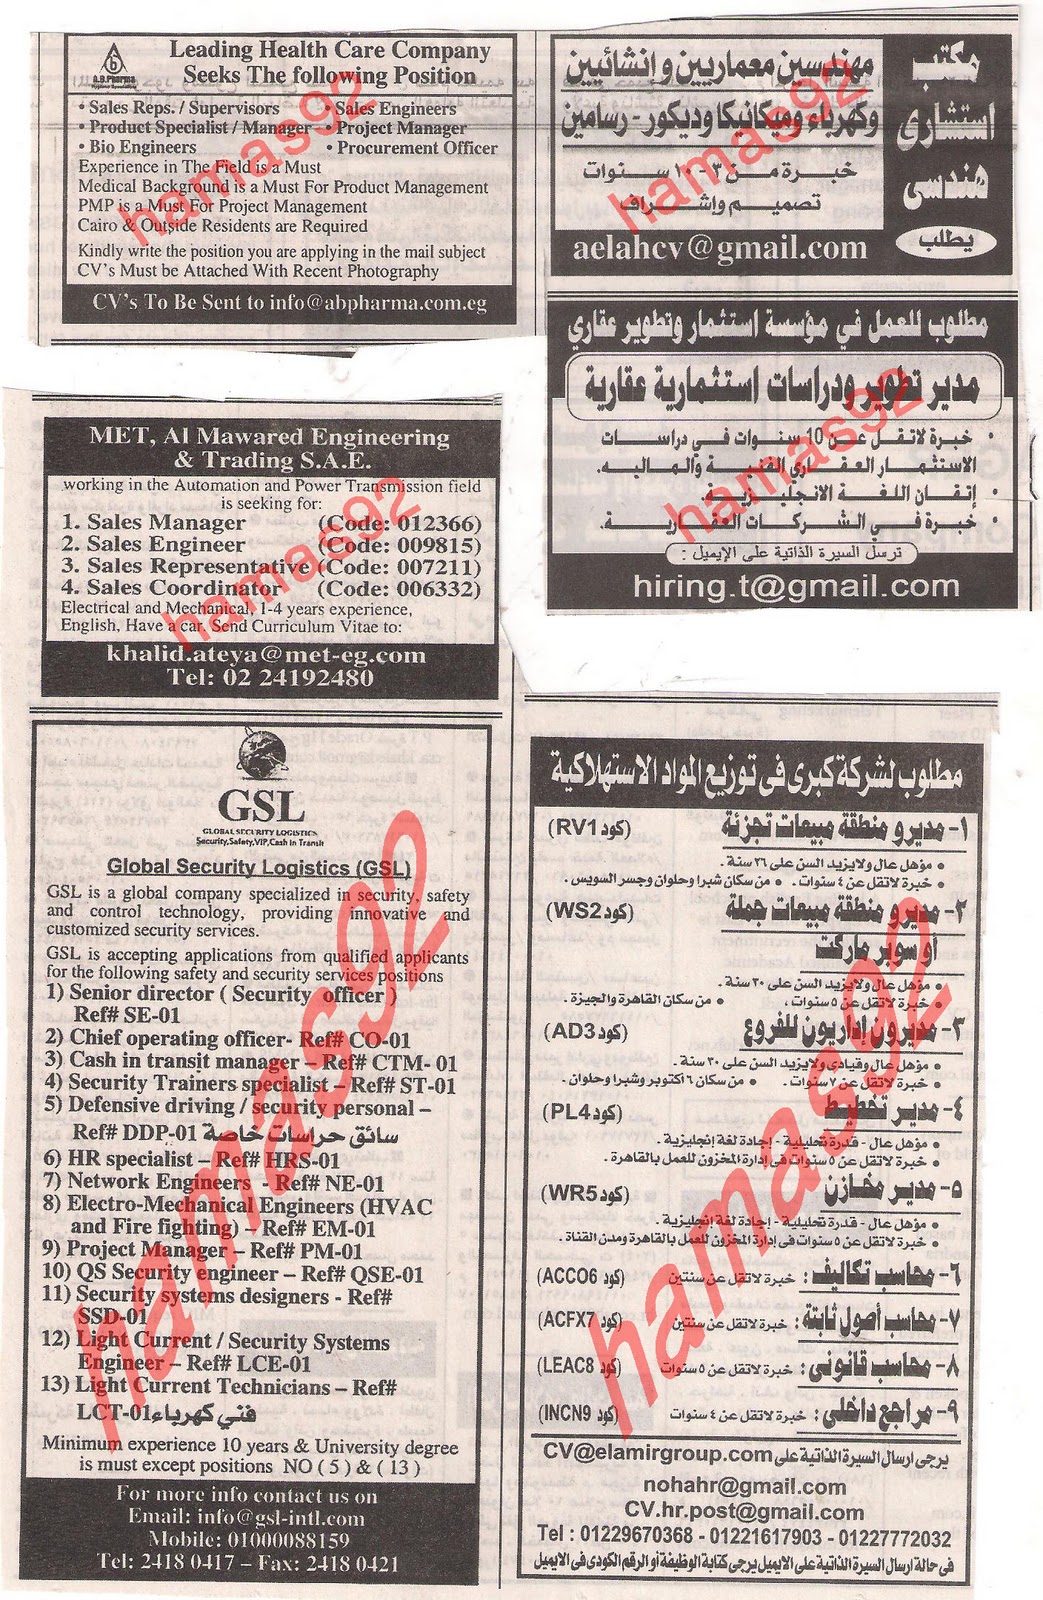 وظائف جريدة الاهرام الجمعة 9  ديسمبر 2011 , الجزء الاول , وظائف اهرام الجمعة 9\12\2011 Picture+006